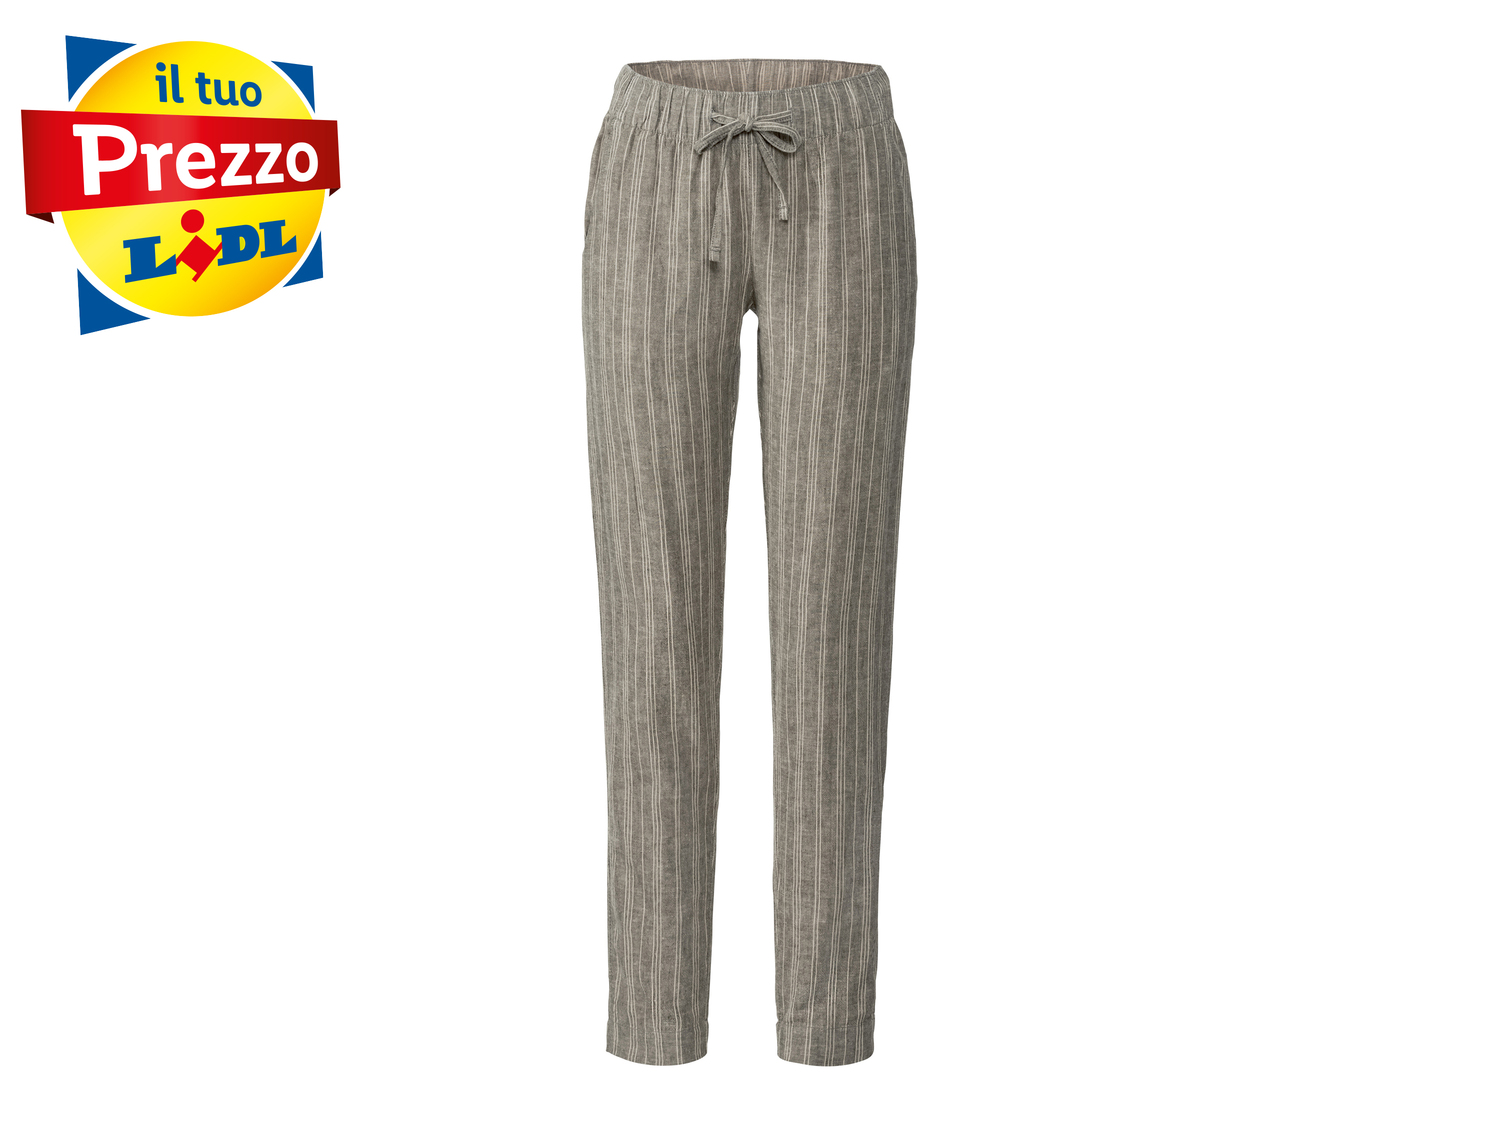 Pantaloni in lino da donna Esmara, prezzo 8.99 &#8364; 
Misure: 38-48
Taglie ...